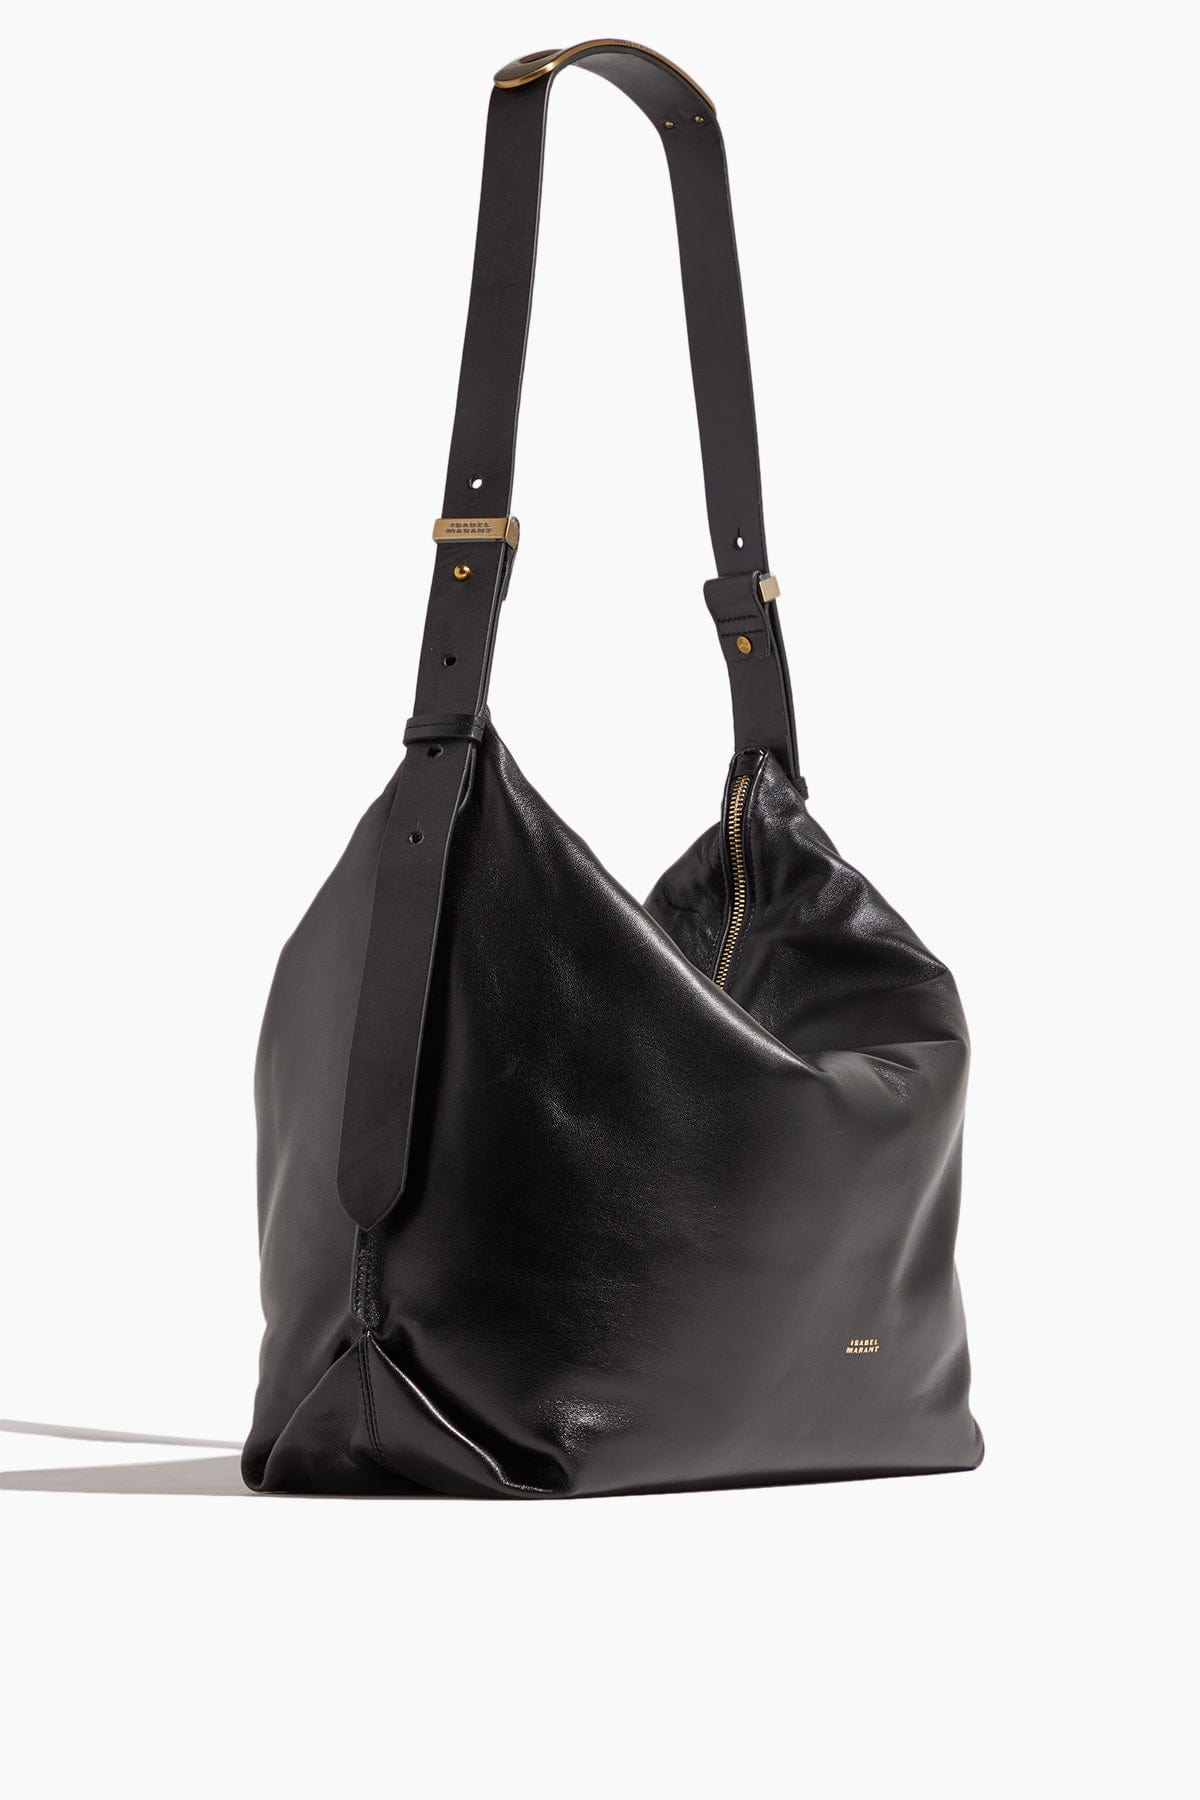 Isabel Marant Shoulder Bags Large Leyden Bag in Black Isabel Marant Large Leyden Bag in Black